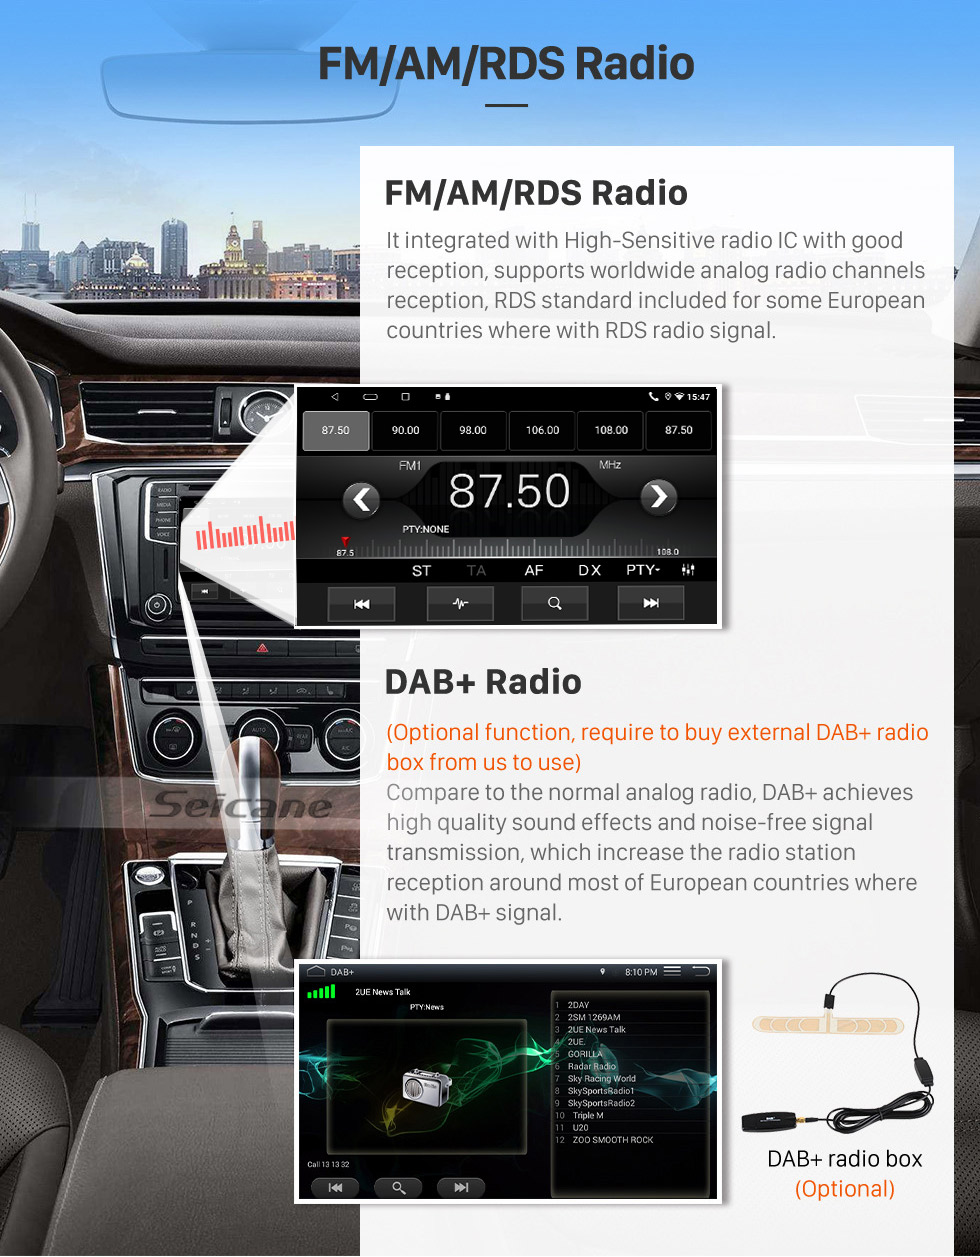 Seicane 9 pouces Android 10.0 pour JAC Tongyue RS Hatchback 2010-2012 Radio Système de navigation GPS avec écran tactile HD Prise en charge Bluetooth Carplay OBD2